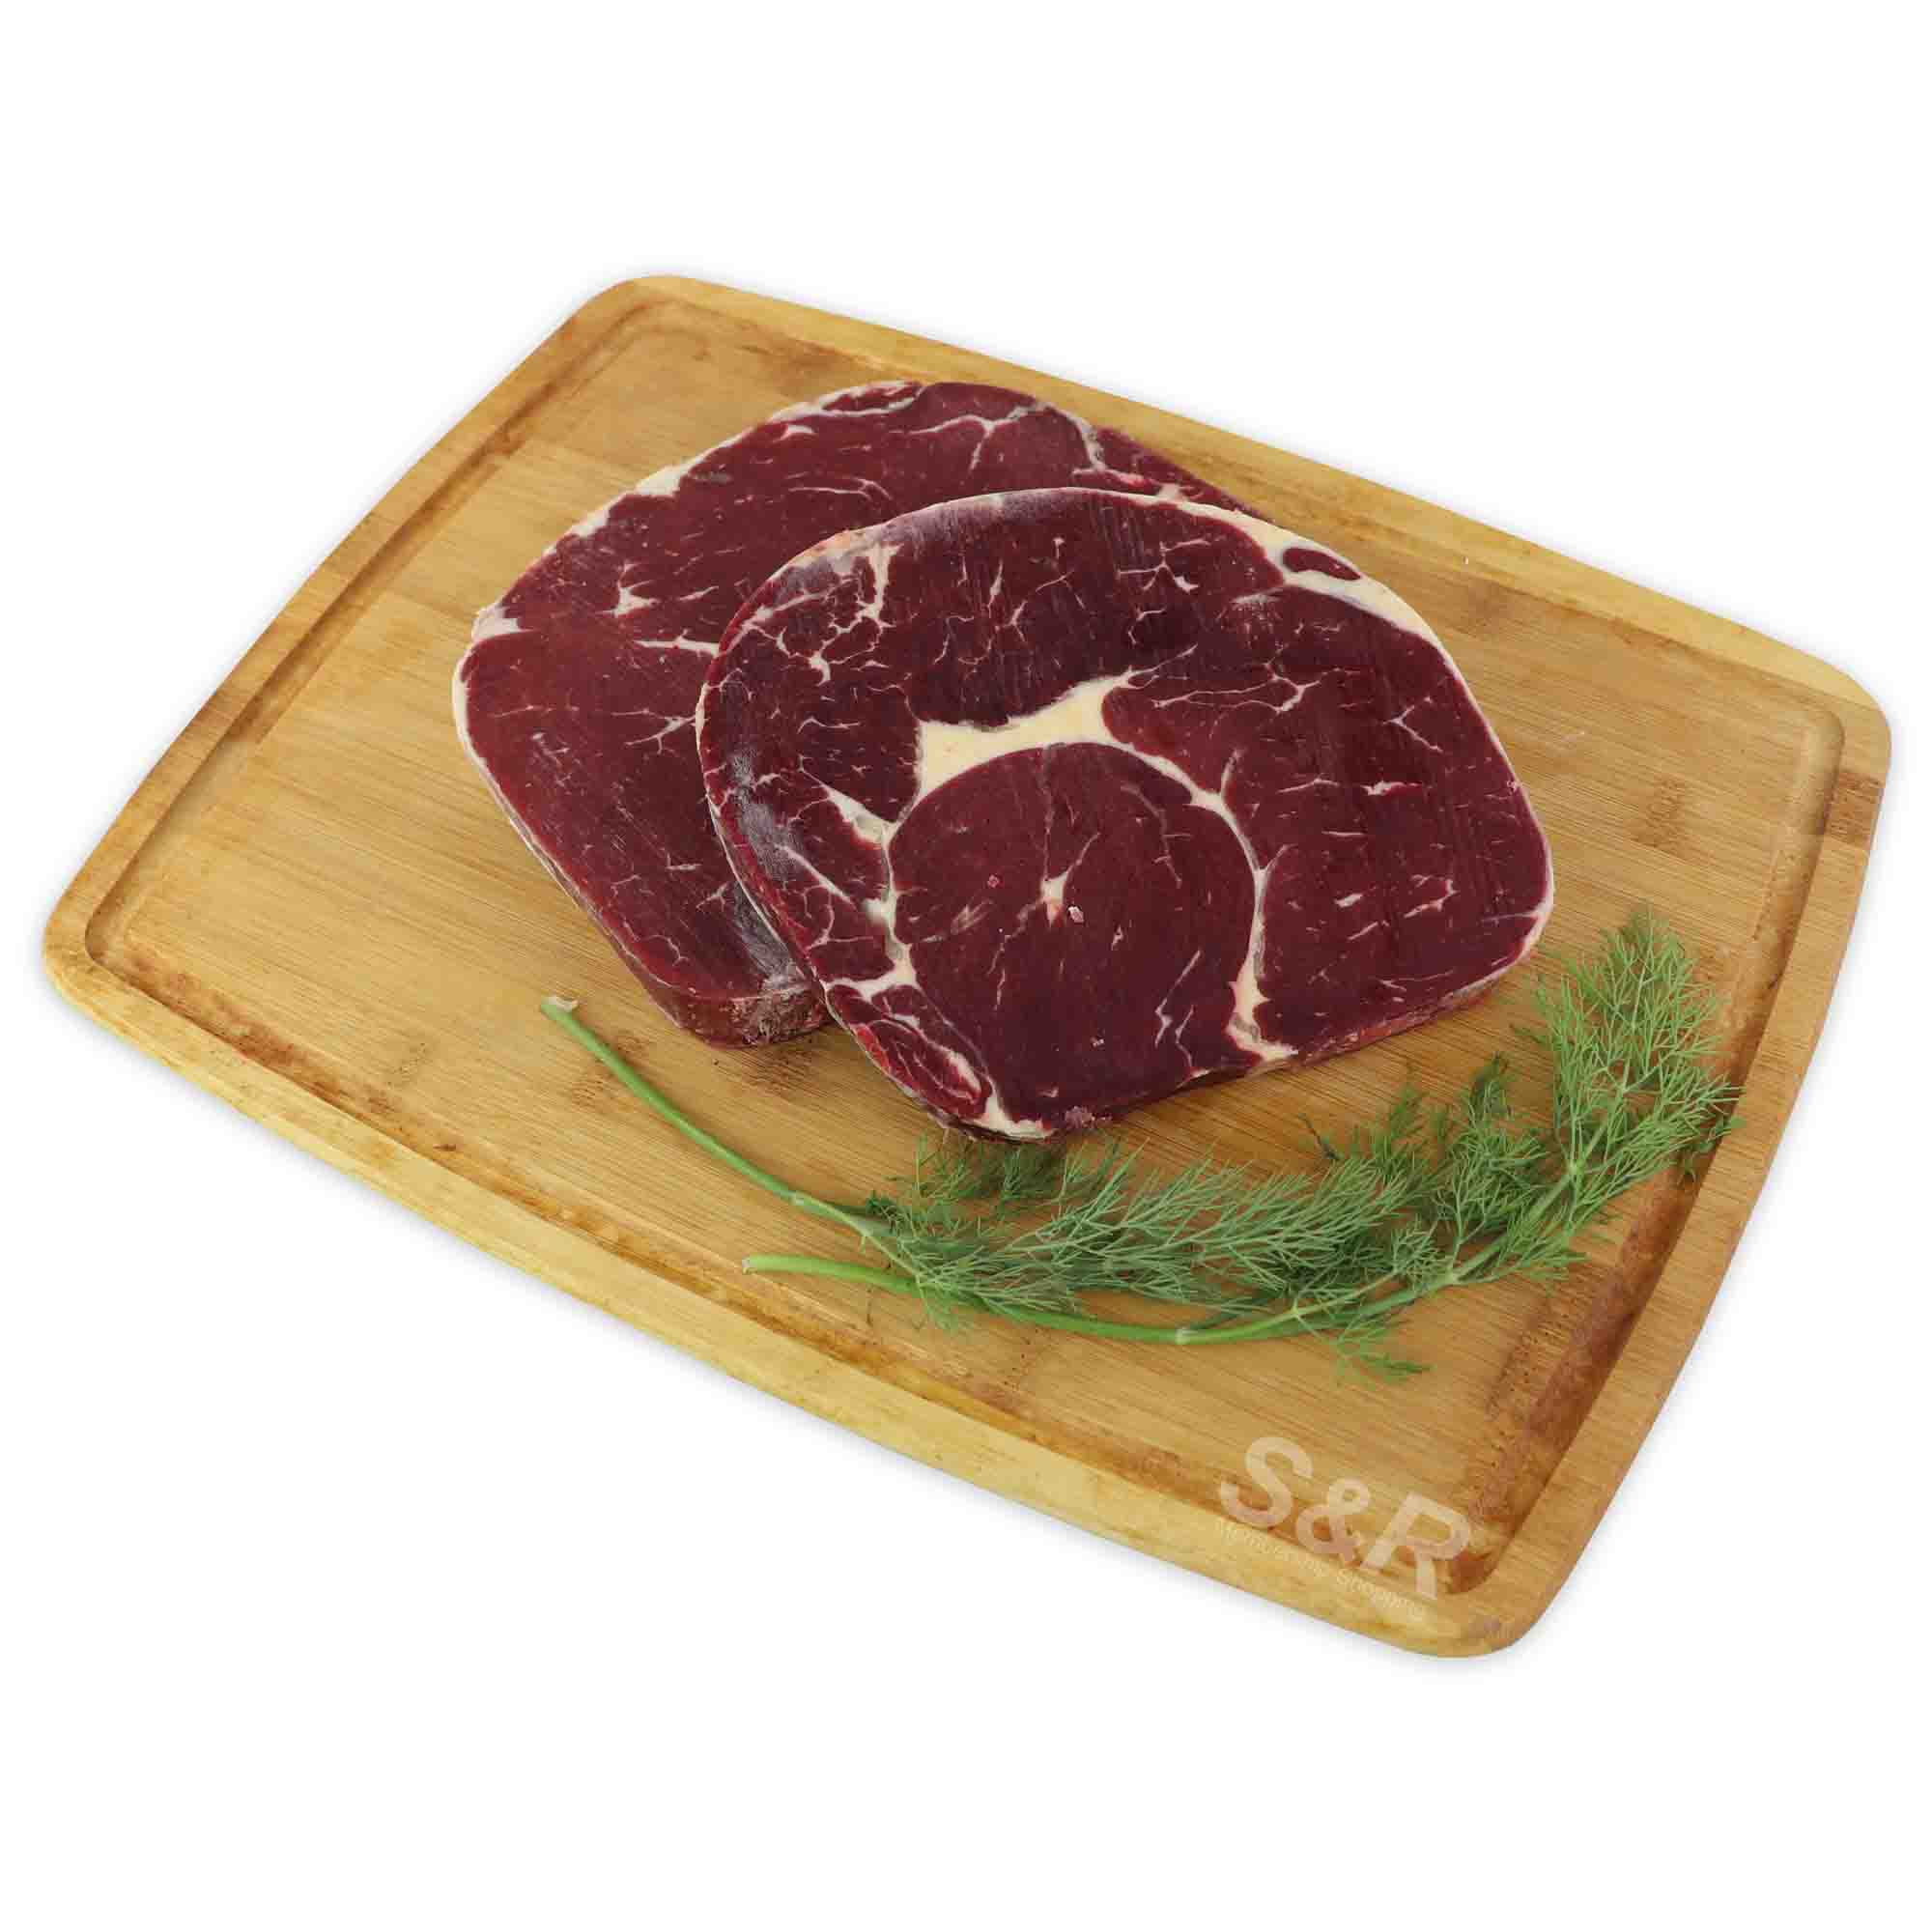 Member's Value Beef Ribeye Steak approx. 2kg